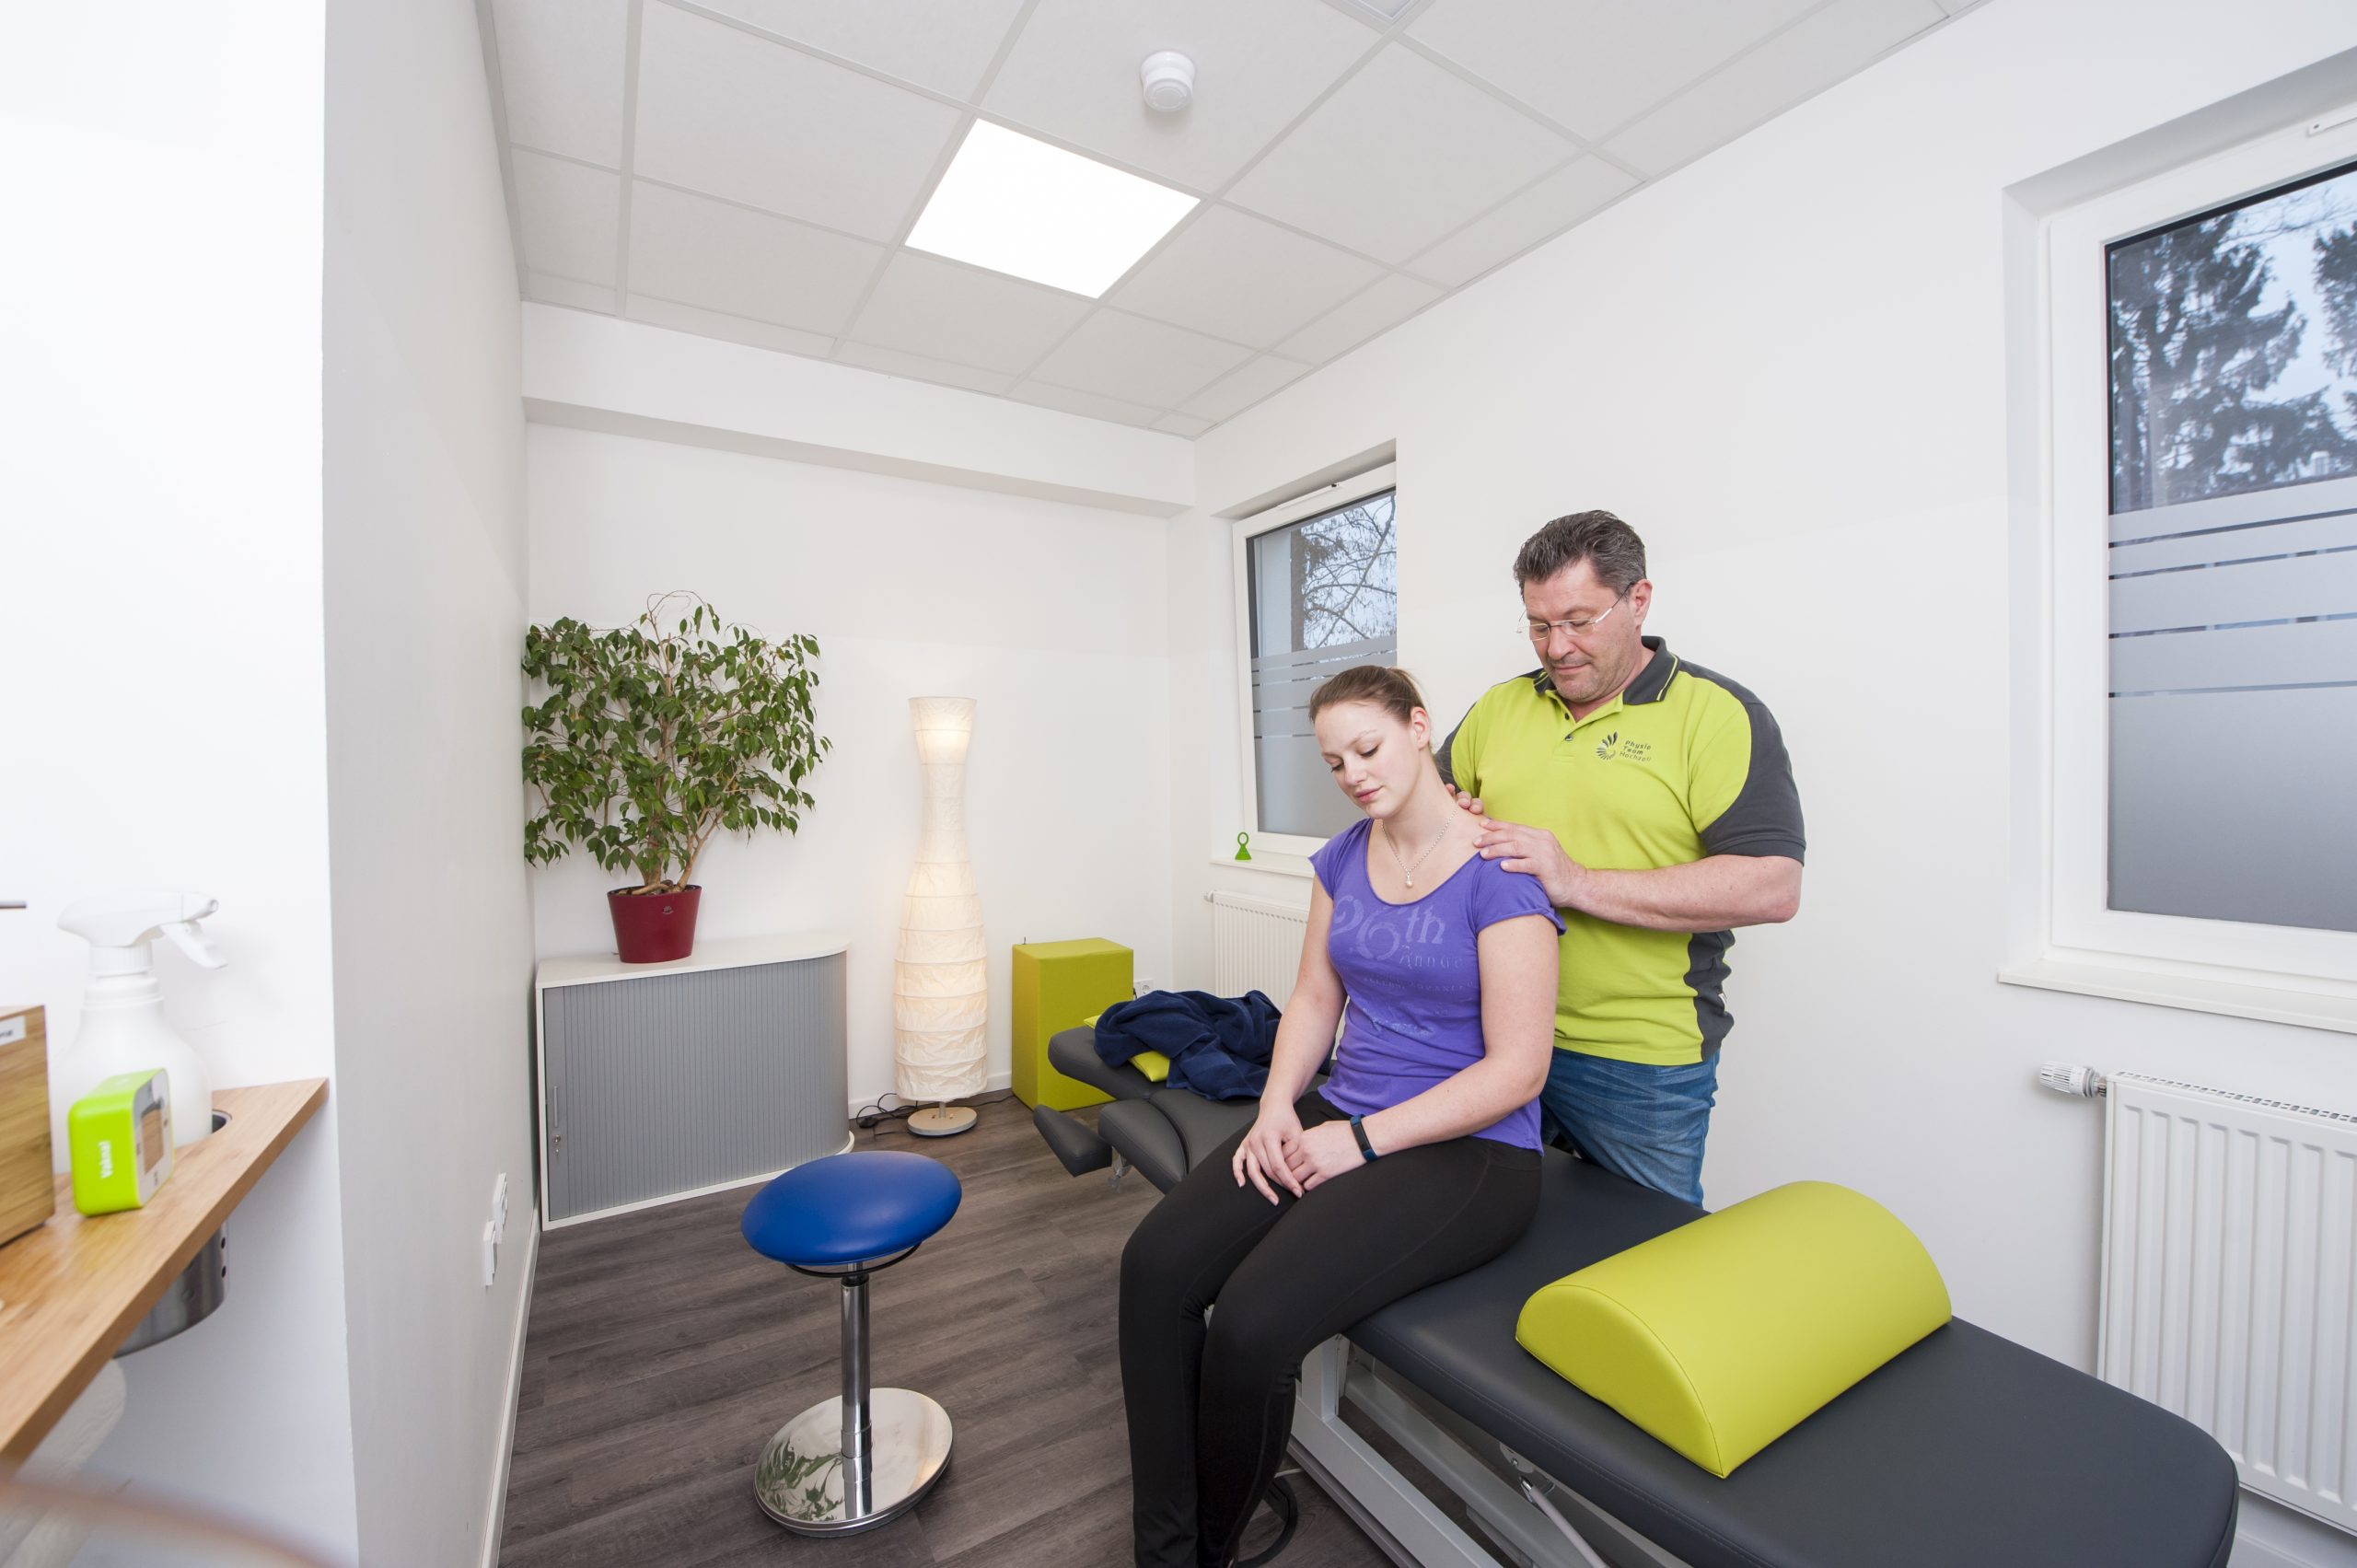 Wir bieten Ihnen zahlreiche Leistungen von Physiotherapie über Krankengymnastik bis Massage und mehr.